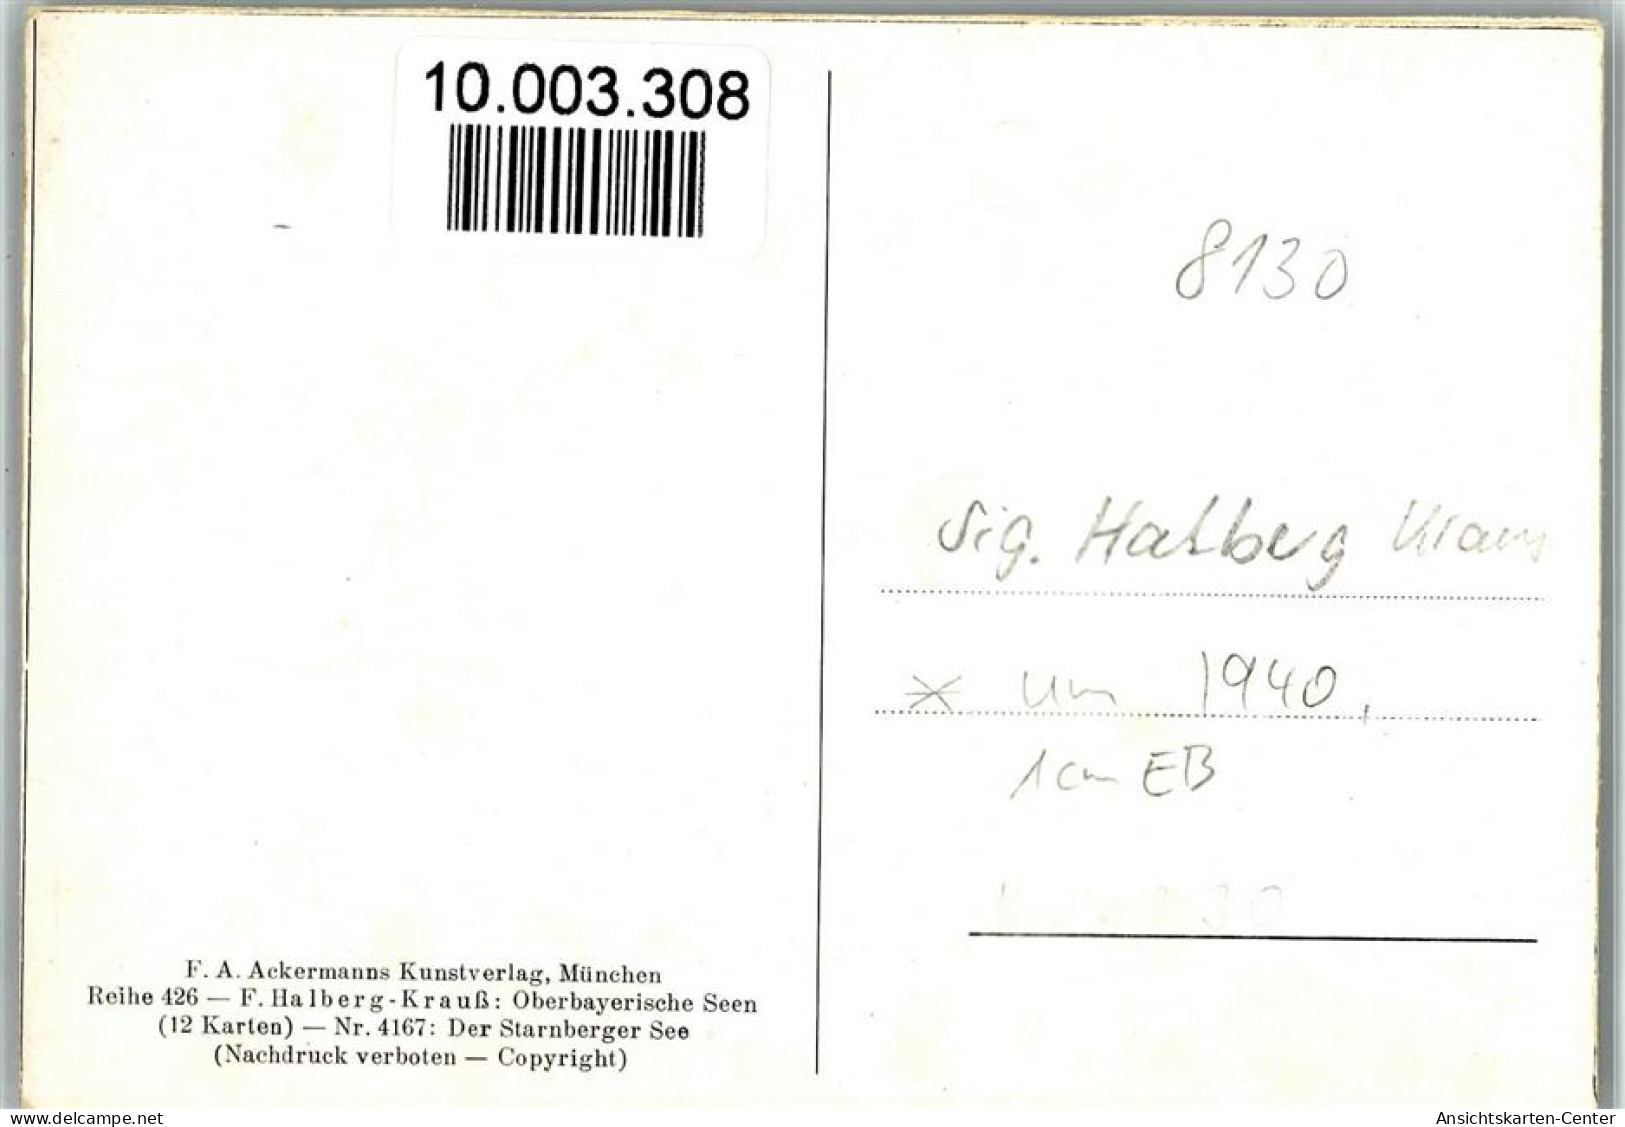 10003308 - Starnberg - Starnberg